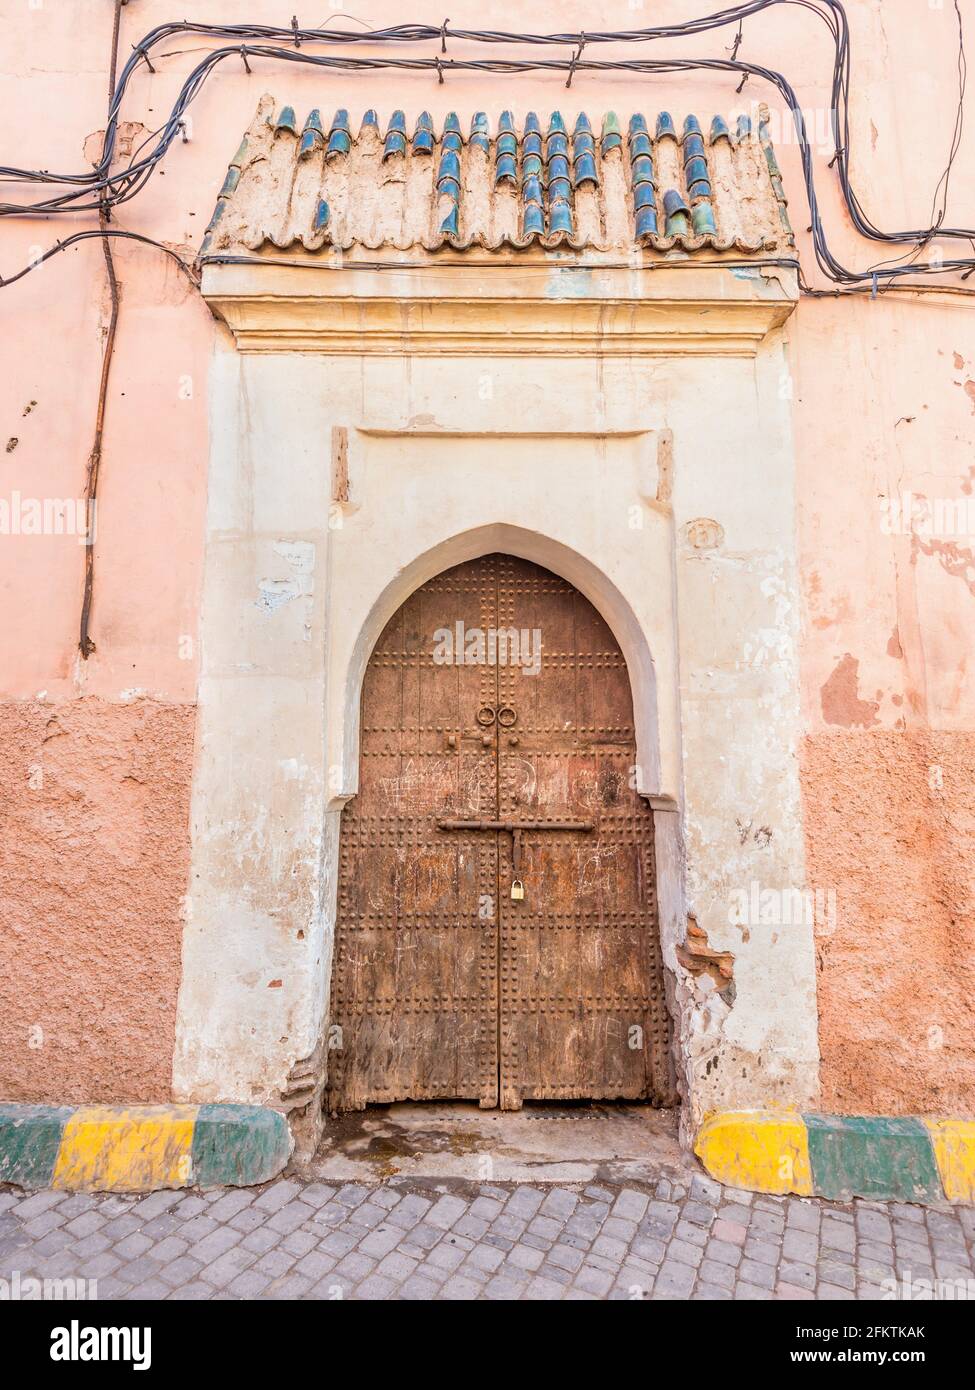 Old wooden door in Marrakech, Morocco. Stock Photo